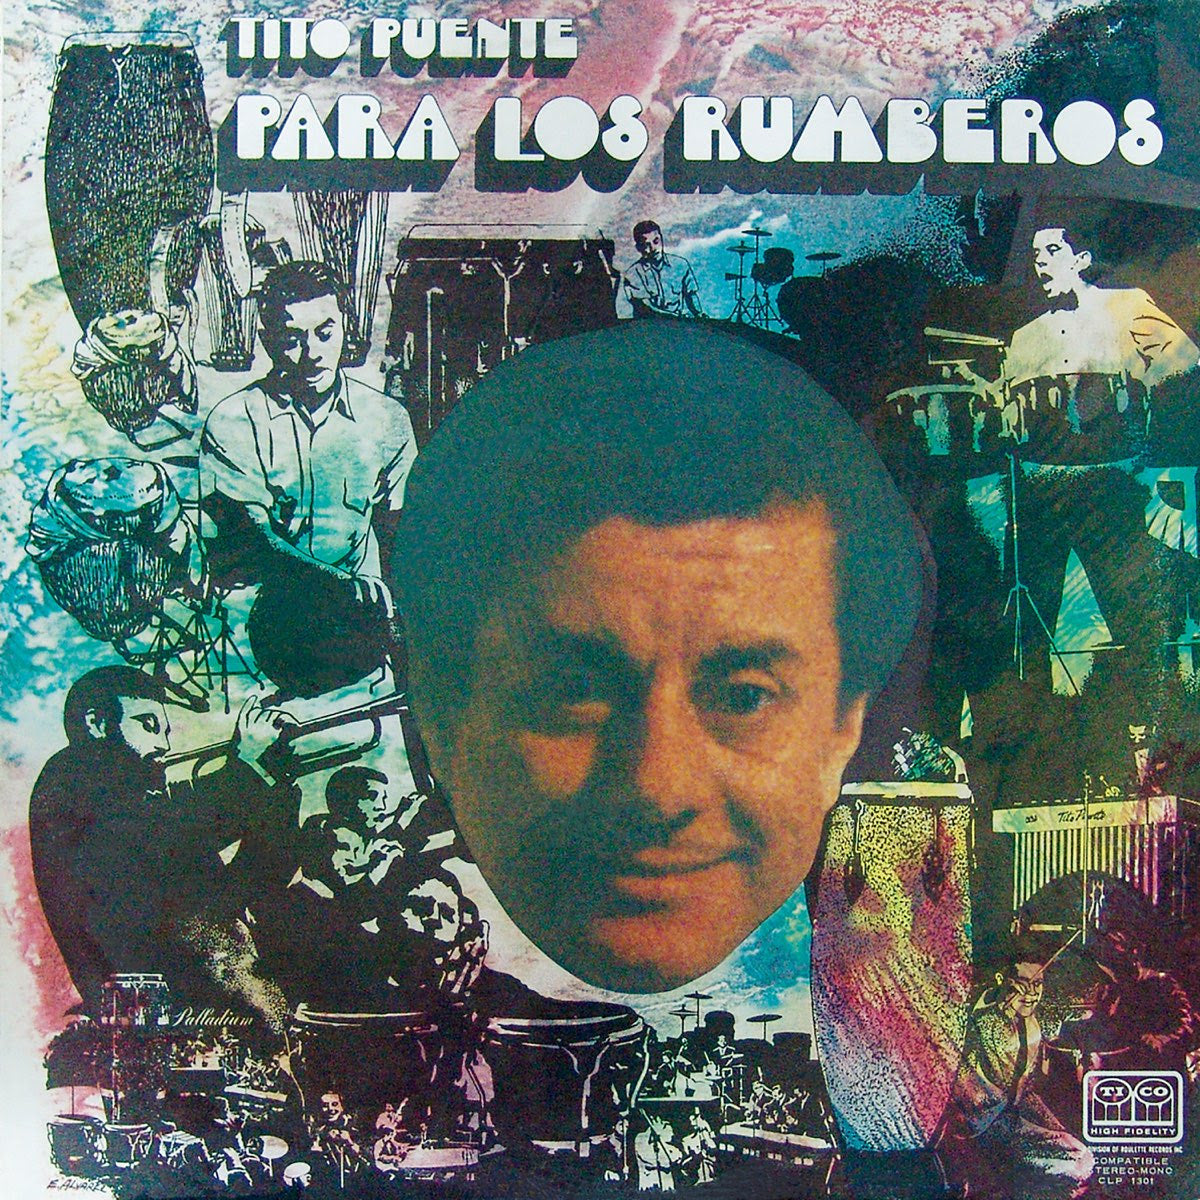 Tito Puente – Para Los Rumberos | Buy the Vinyl LP from Flying Nun Records 